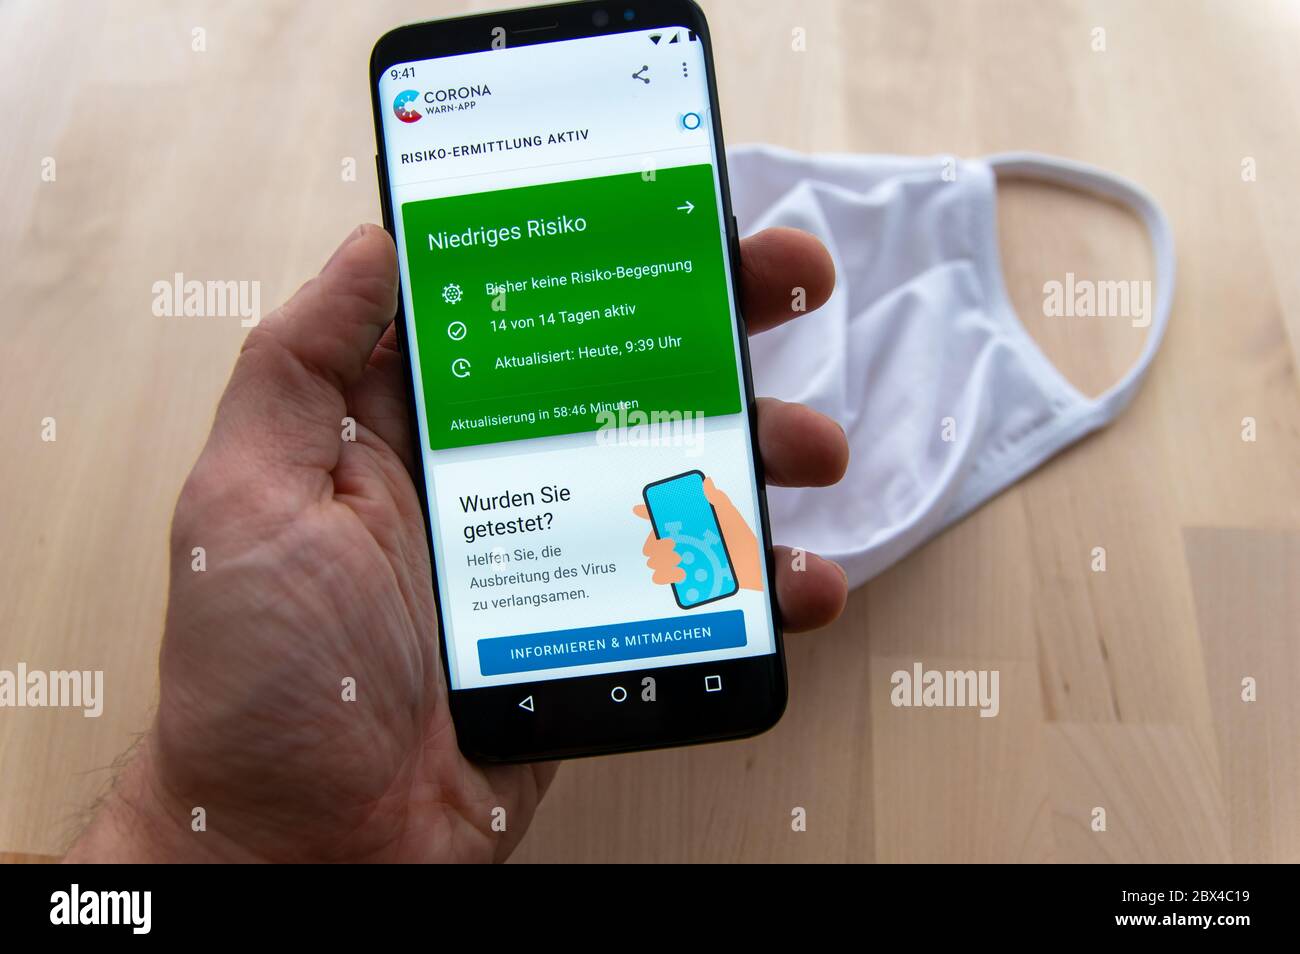 Zittau, Sassonia / Germania - 5 giugno 2020: Smartphone con tenuta a mano che mostra l'analisi attiva del rischio dell'applicazione tedesca Corona WARN con maschera bianca sfocata Foto Stock